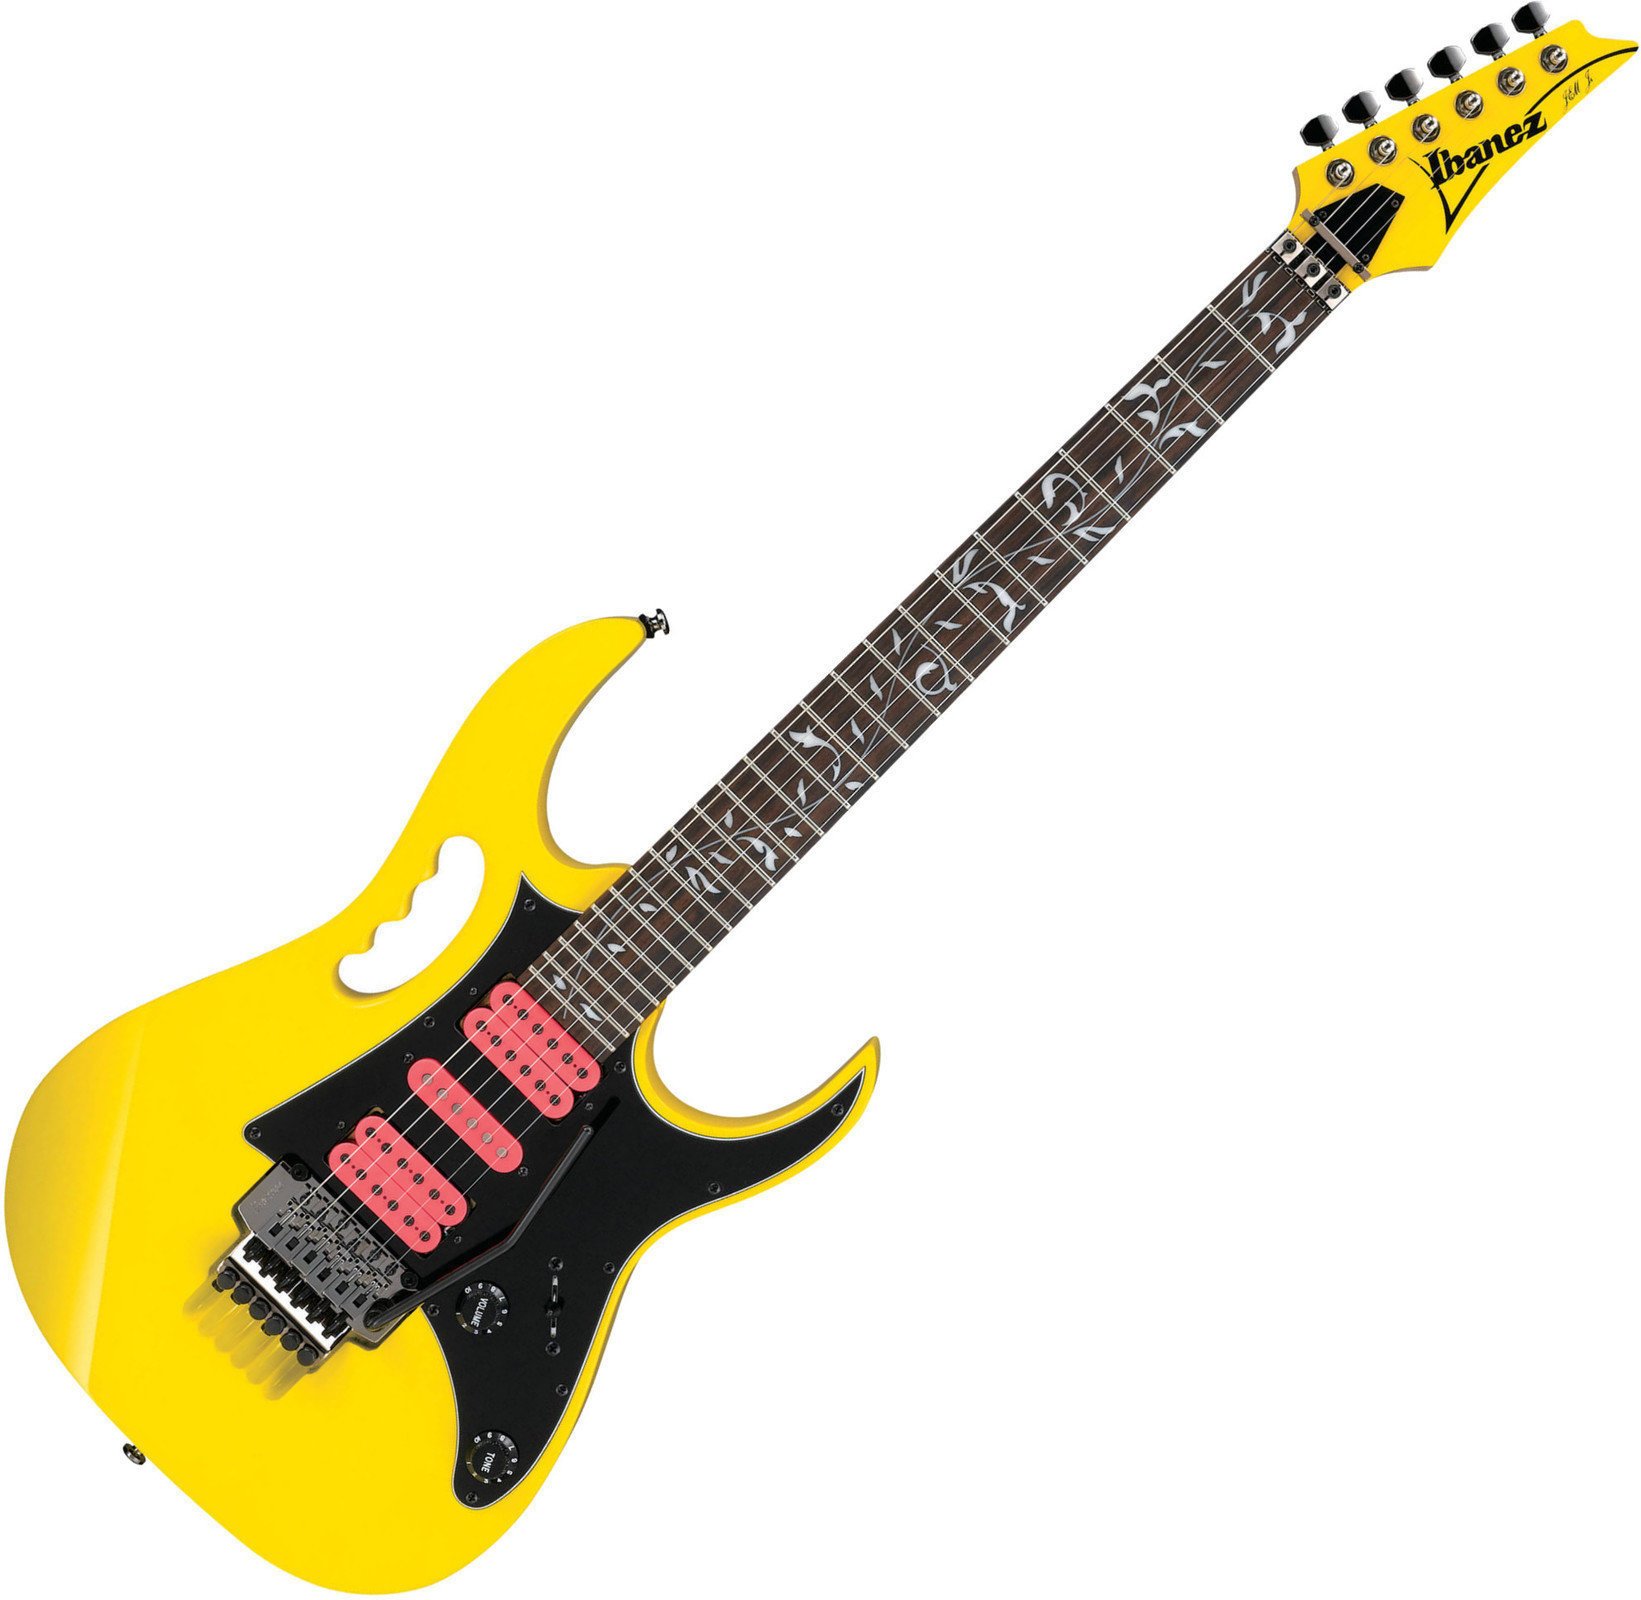 Elektrische gitaar Ibanez JEMJRSP-YE Yellow